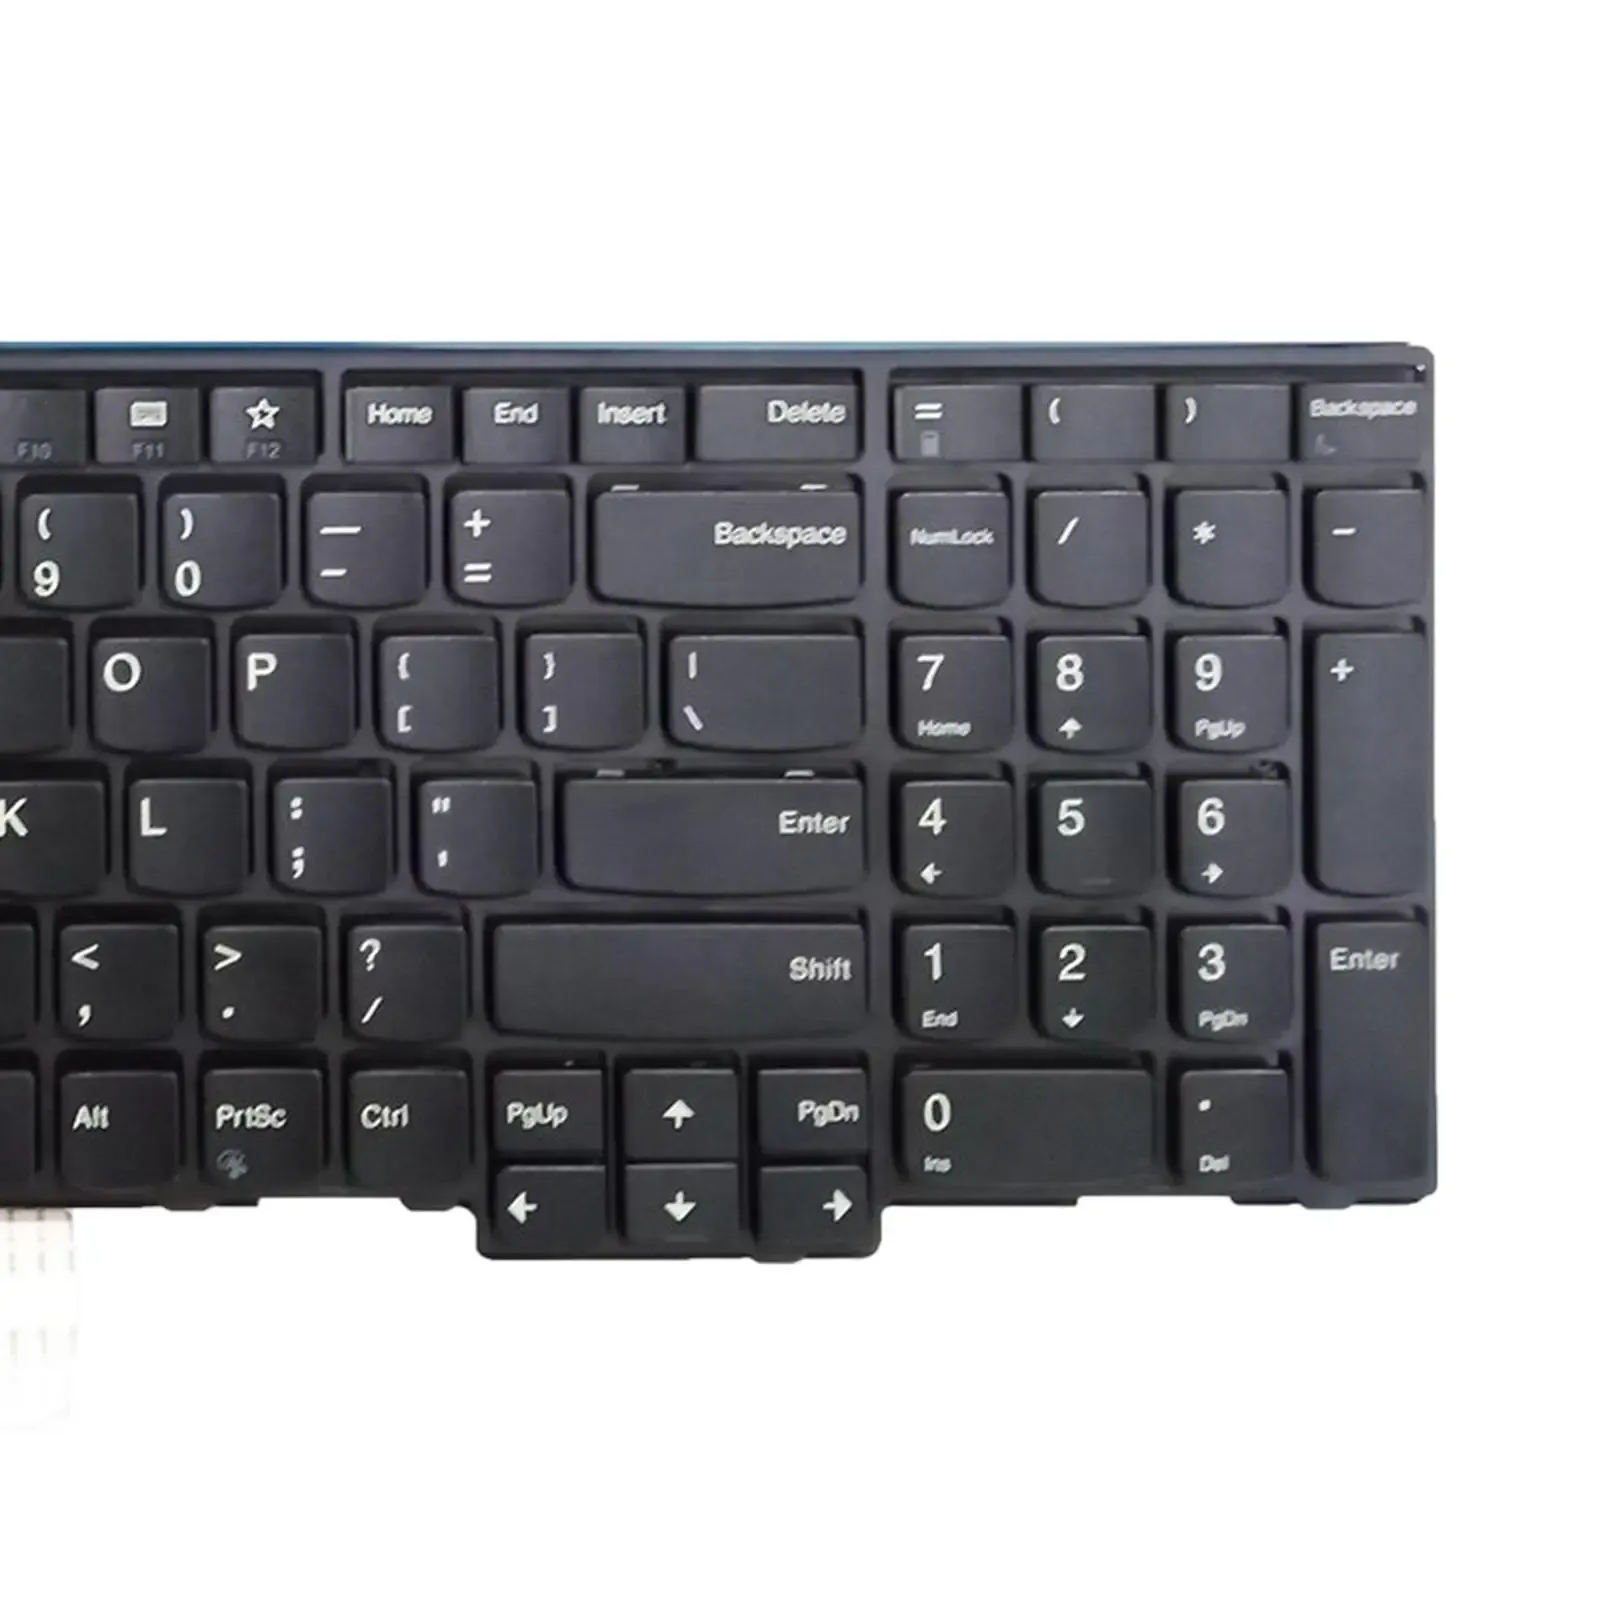 Kapaklar Dizüstü bilgisayar klavyesi ABD Düzeni L570 için Mat Dayanıklı Tuş Takımı 15.6inches 01AX610 01AX651 Siyah Parçayı değiştiriyor